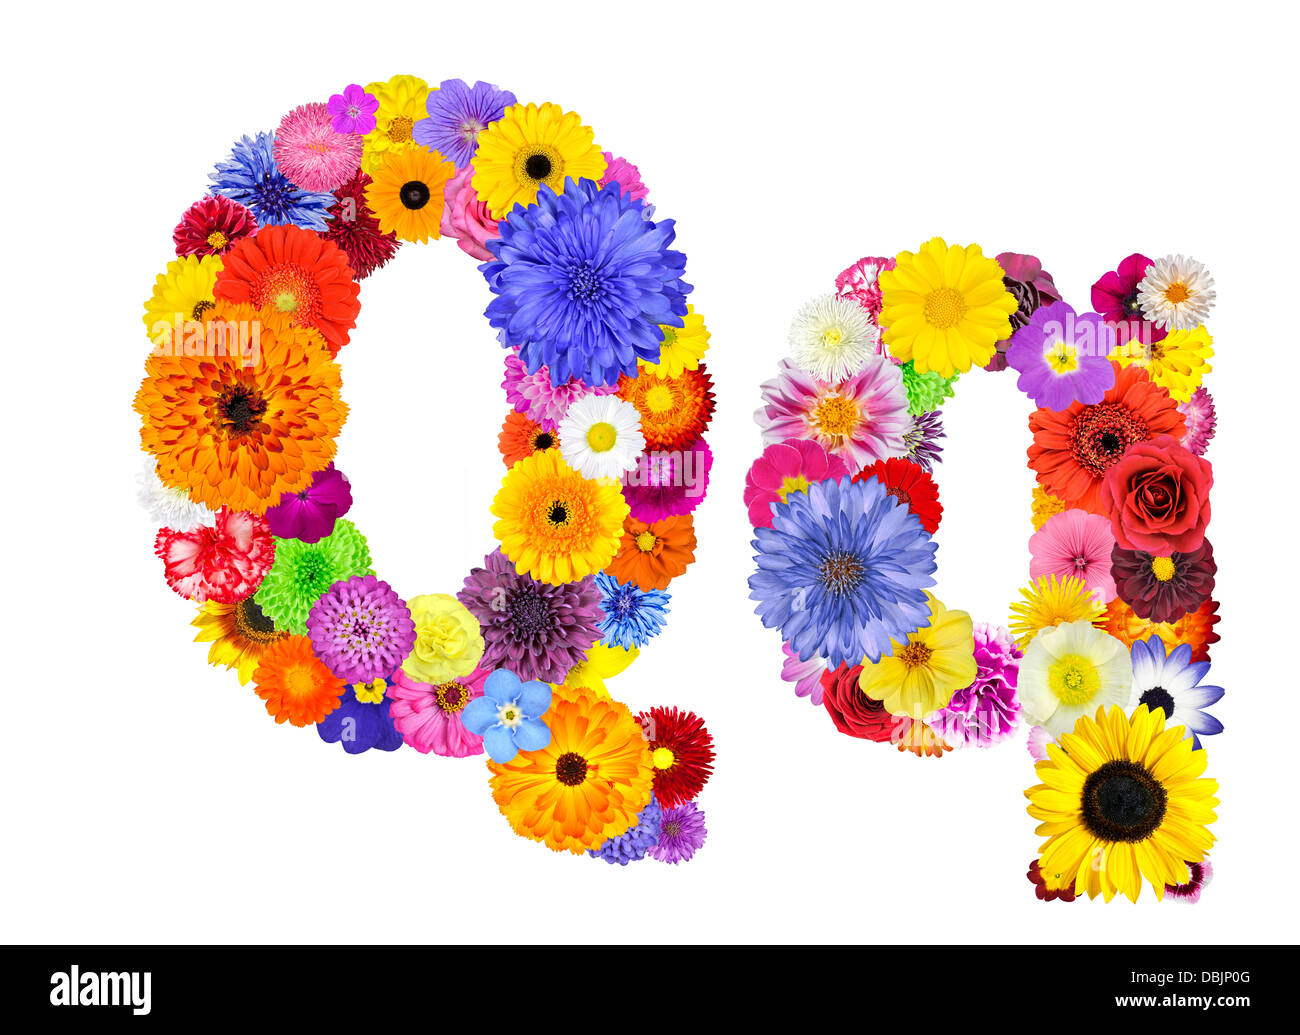 Buchstabe Q Blume Alphabet, Isolated on White. Buchstaben bestehen aus  vielen bunten und originellen Blumen Stockfotografie - Alamy